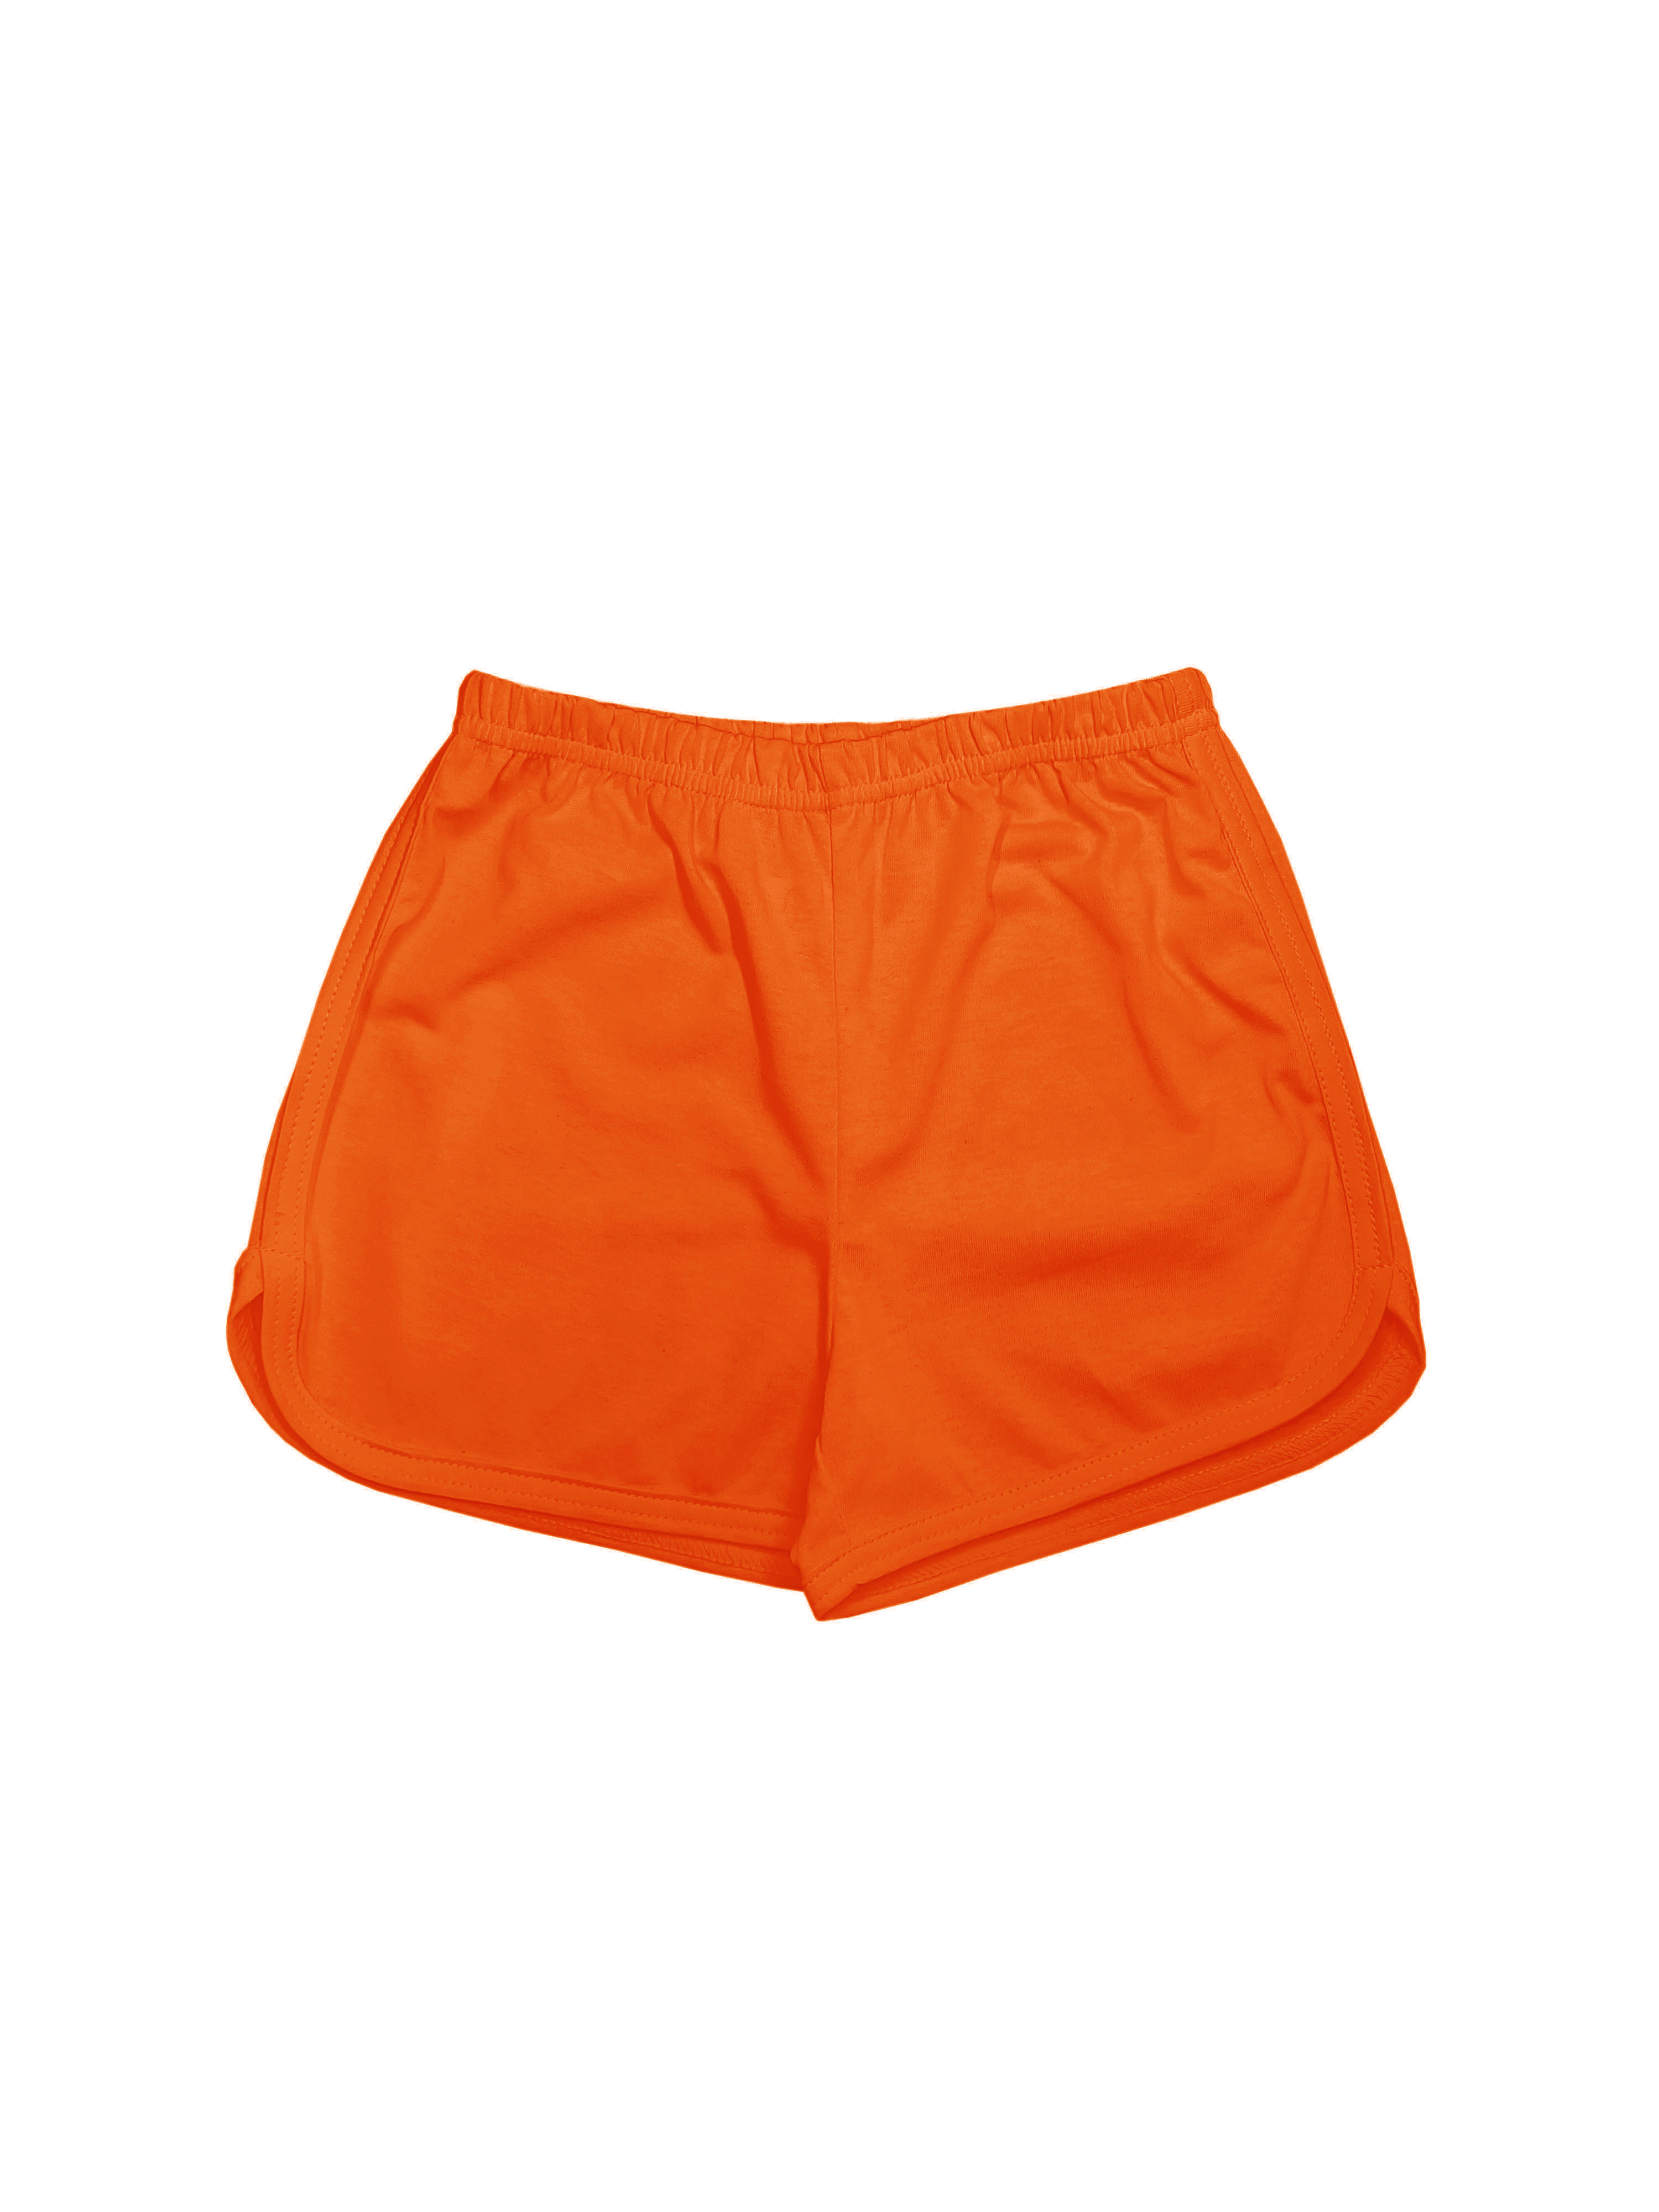 Шорты детские Детрик ШД-0322, оранжевый, 134 мяч для художественной гимнастики однотонный d19 см пвх agp 19 06 оранжевый с блестками